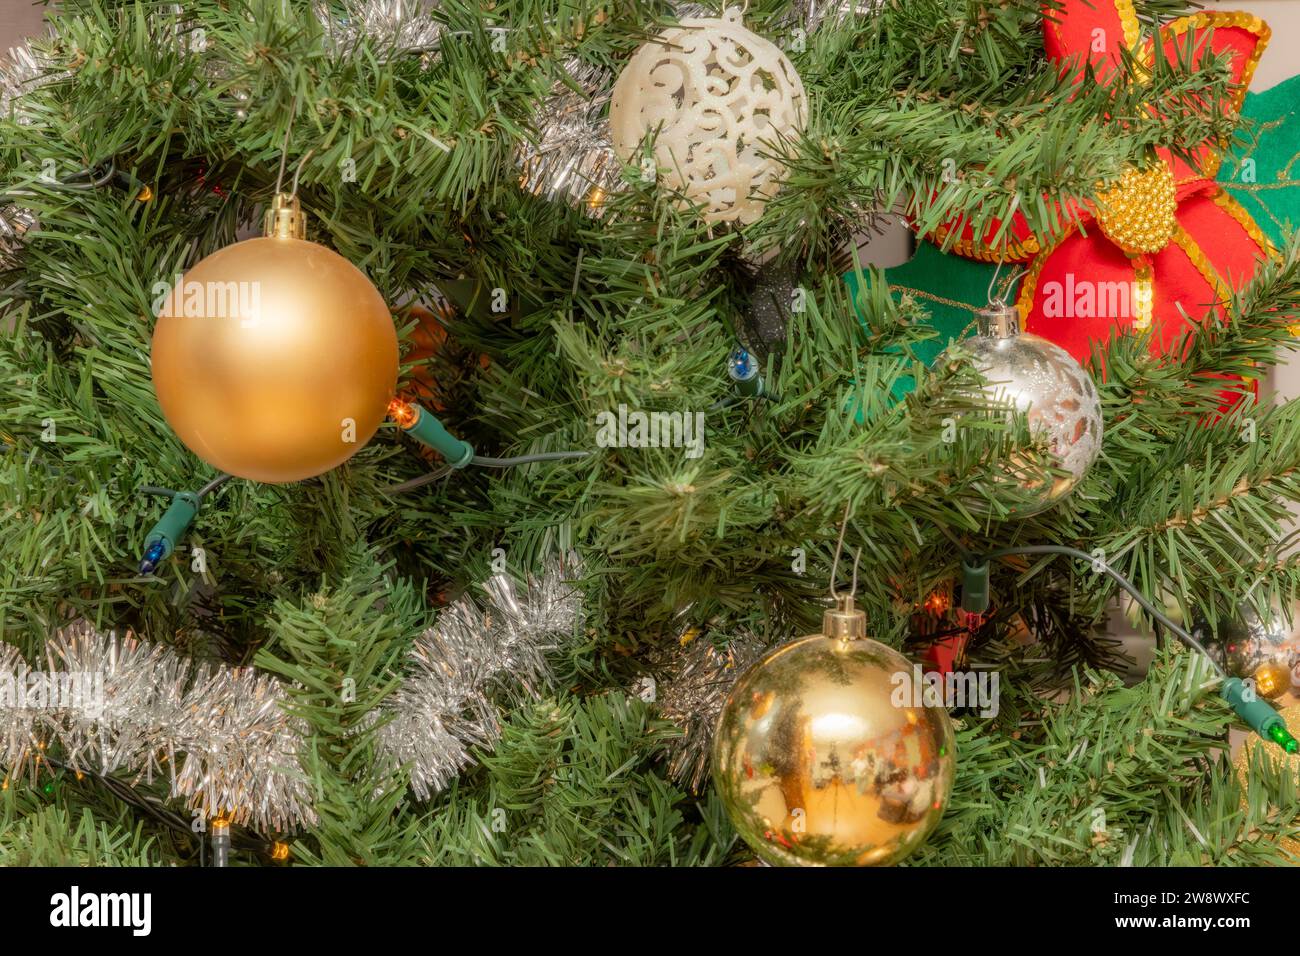 Primer plano de decoracion navidena, bolas doradas y plateadas entre el follaje verde del árbol, pequenas luces, flor de pascua en un fondo borroso, c Stock Photo